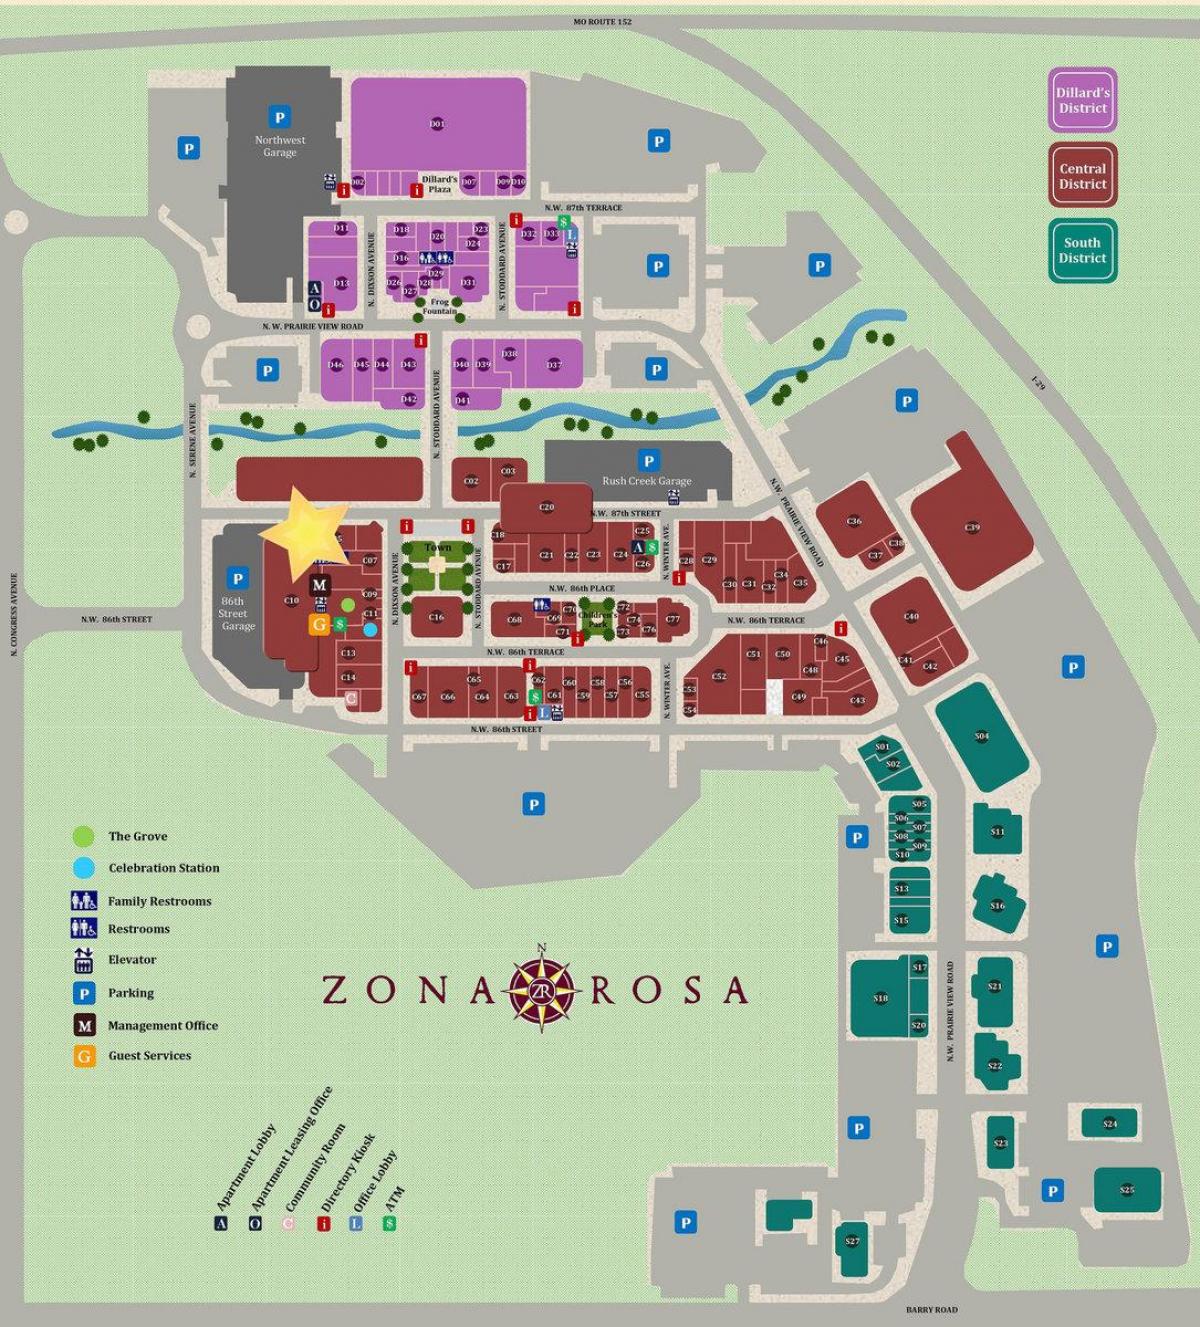 zona روزا میکسیکو شہر کا نقشہ